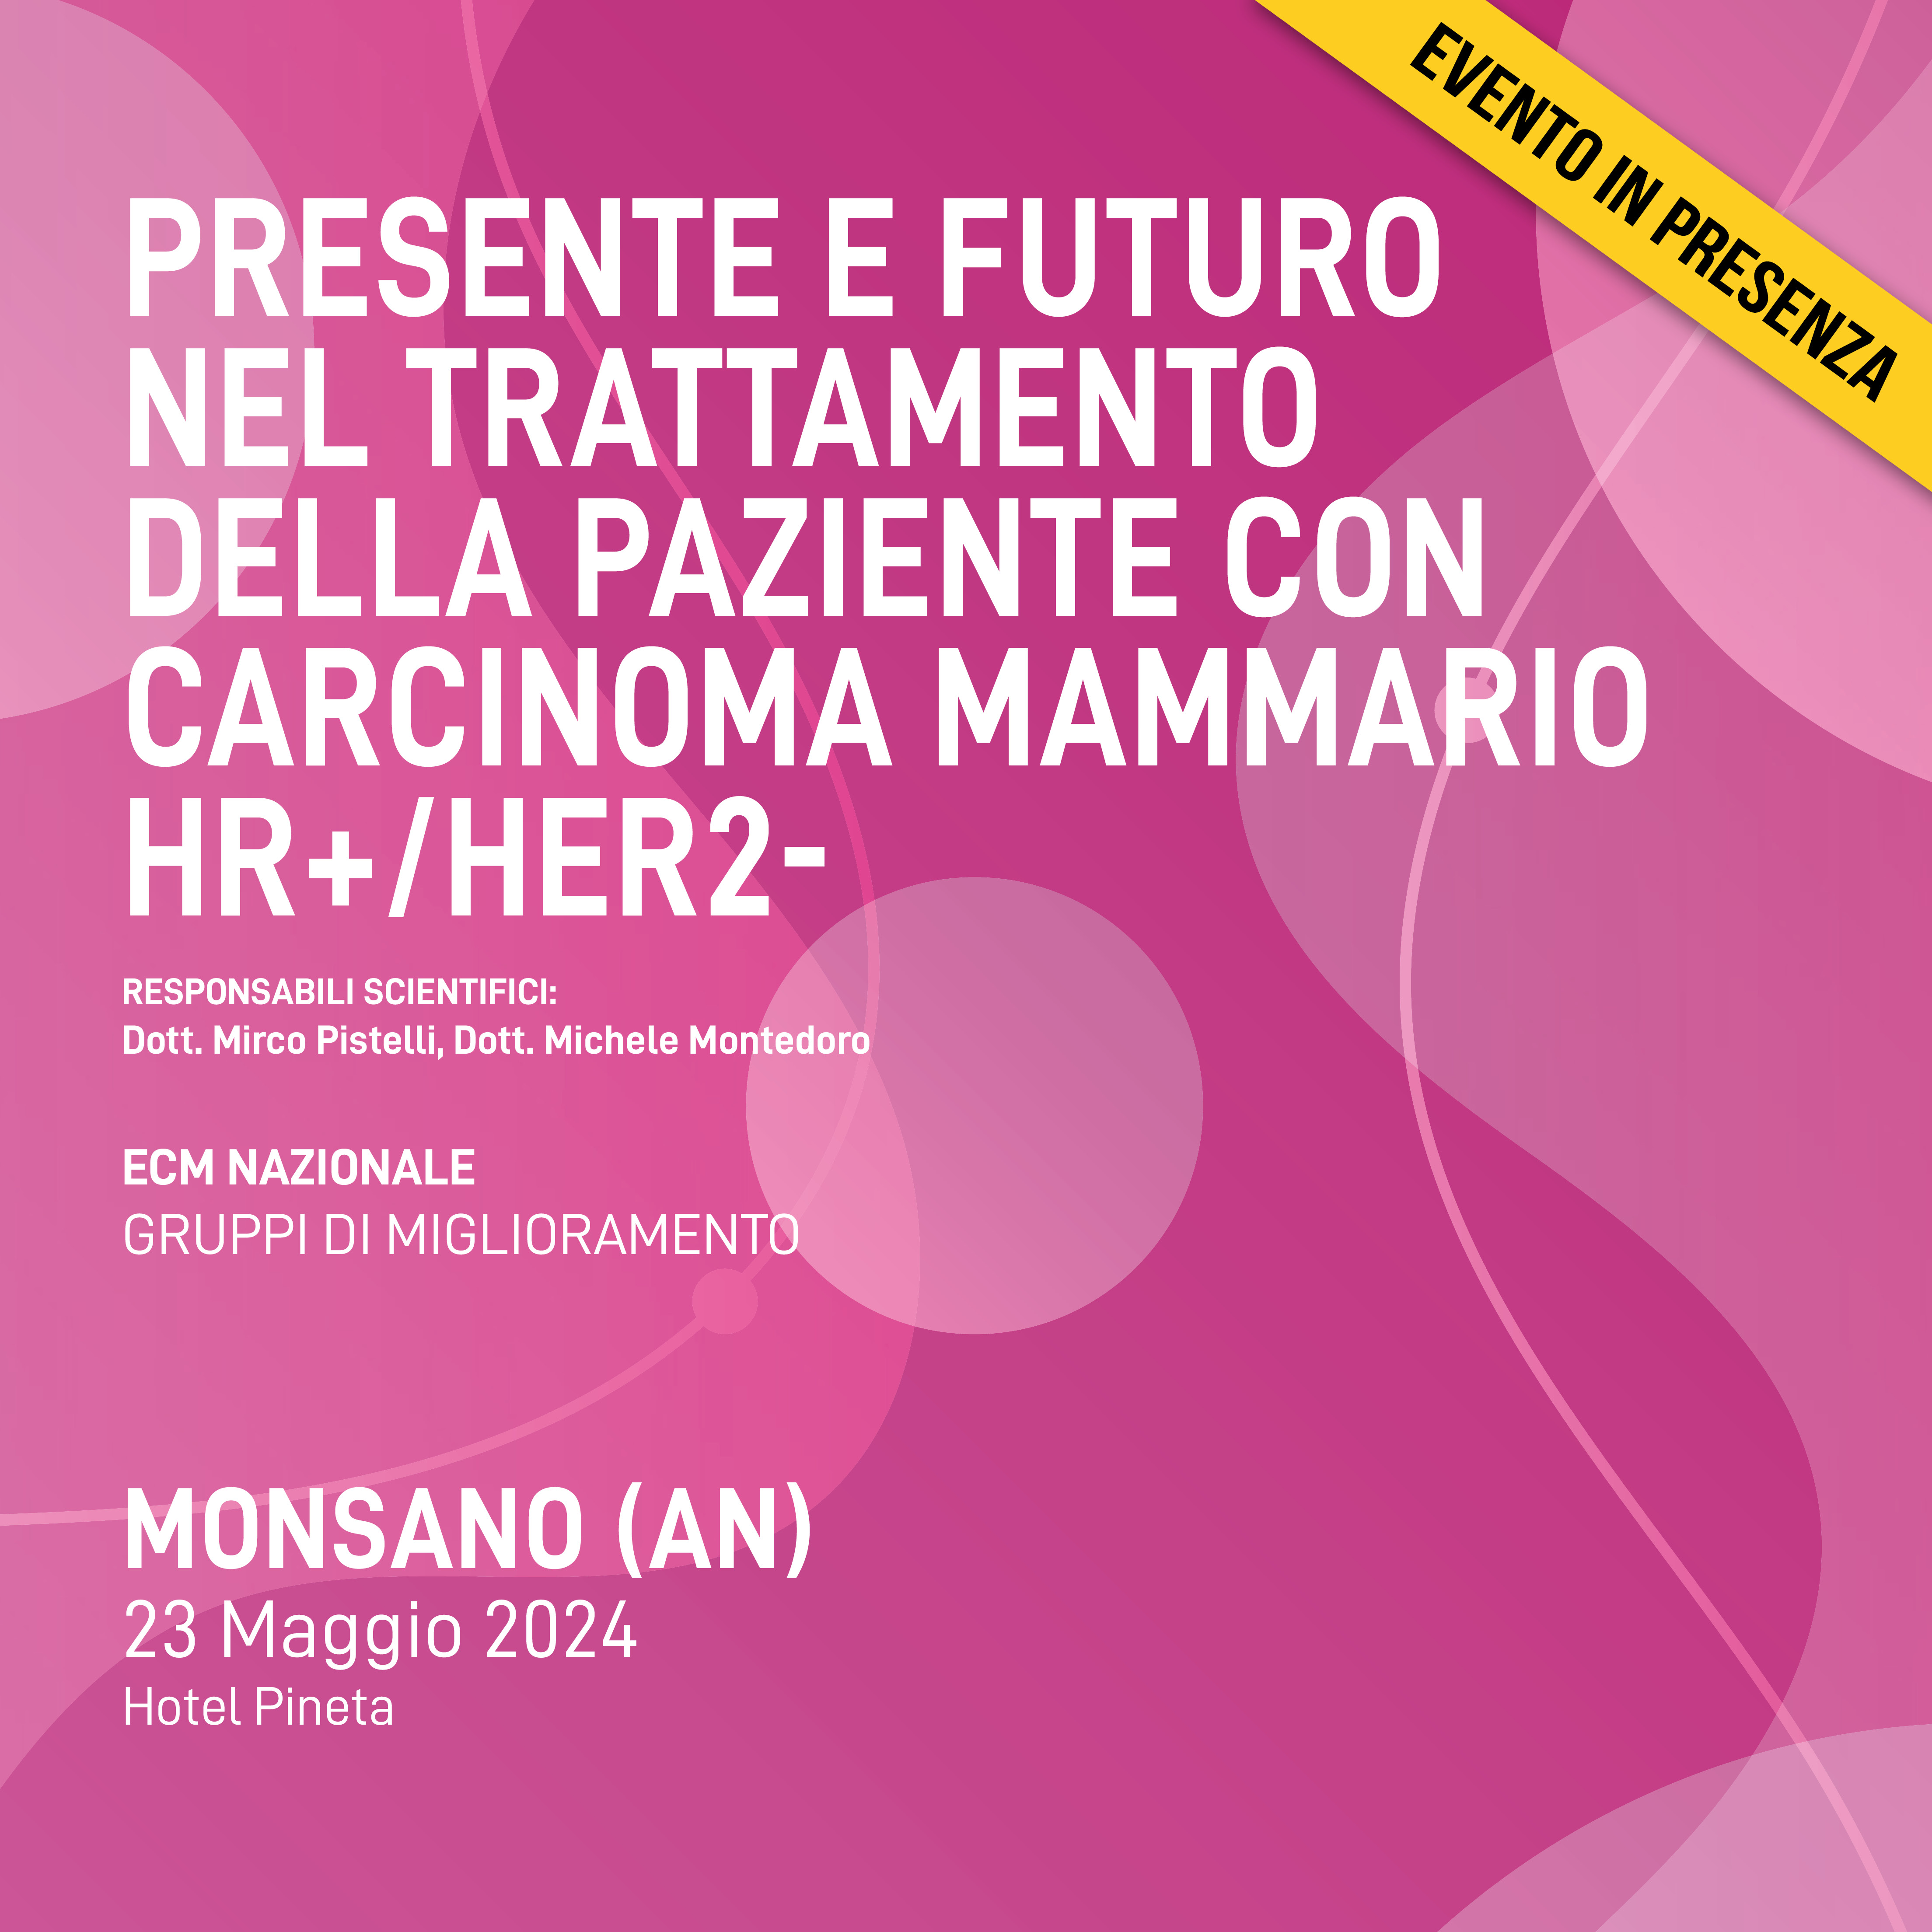 PRESENTE E FUTURO NEL TRATTAMENTO DELLA PAZIENTE CON CARCINOMA MAMMARIO HR+/HER2-